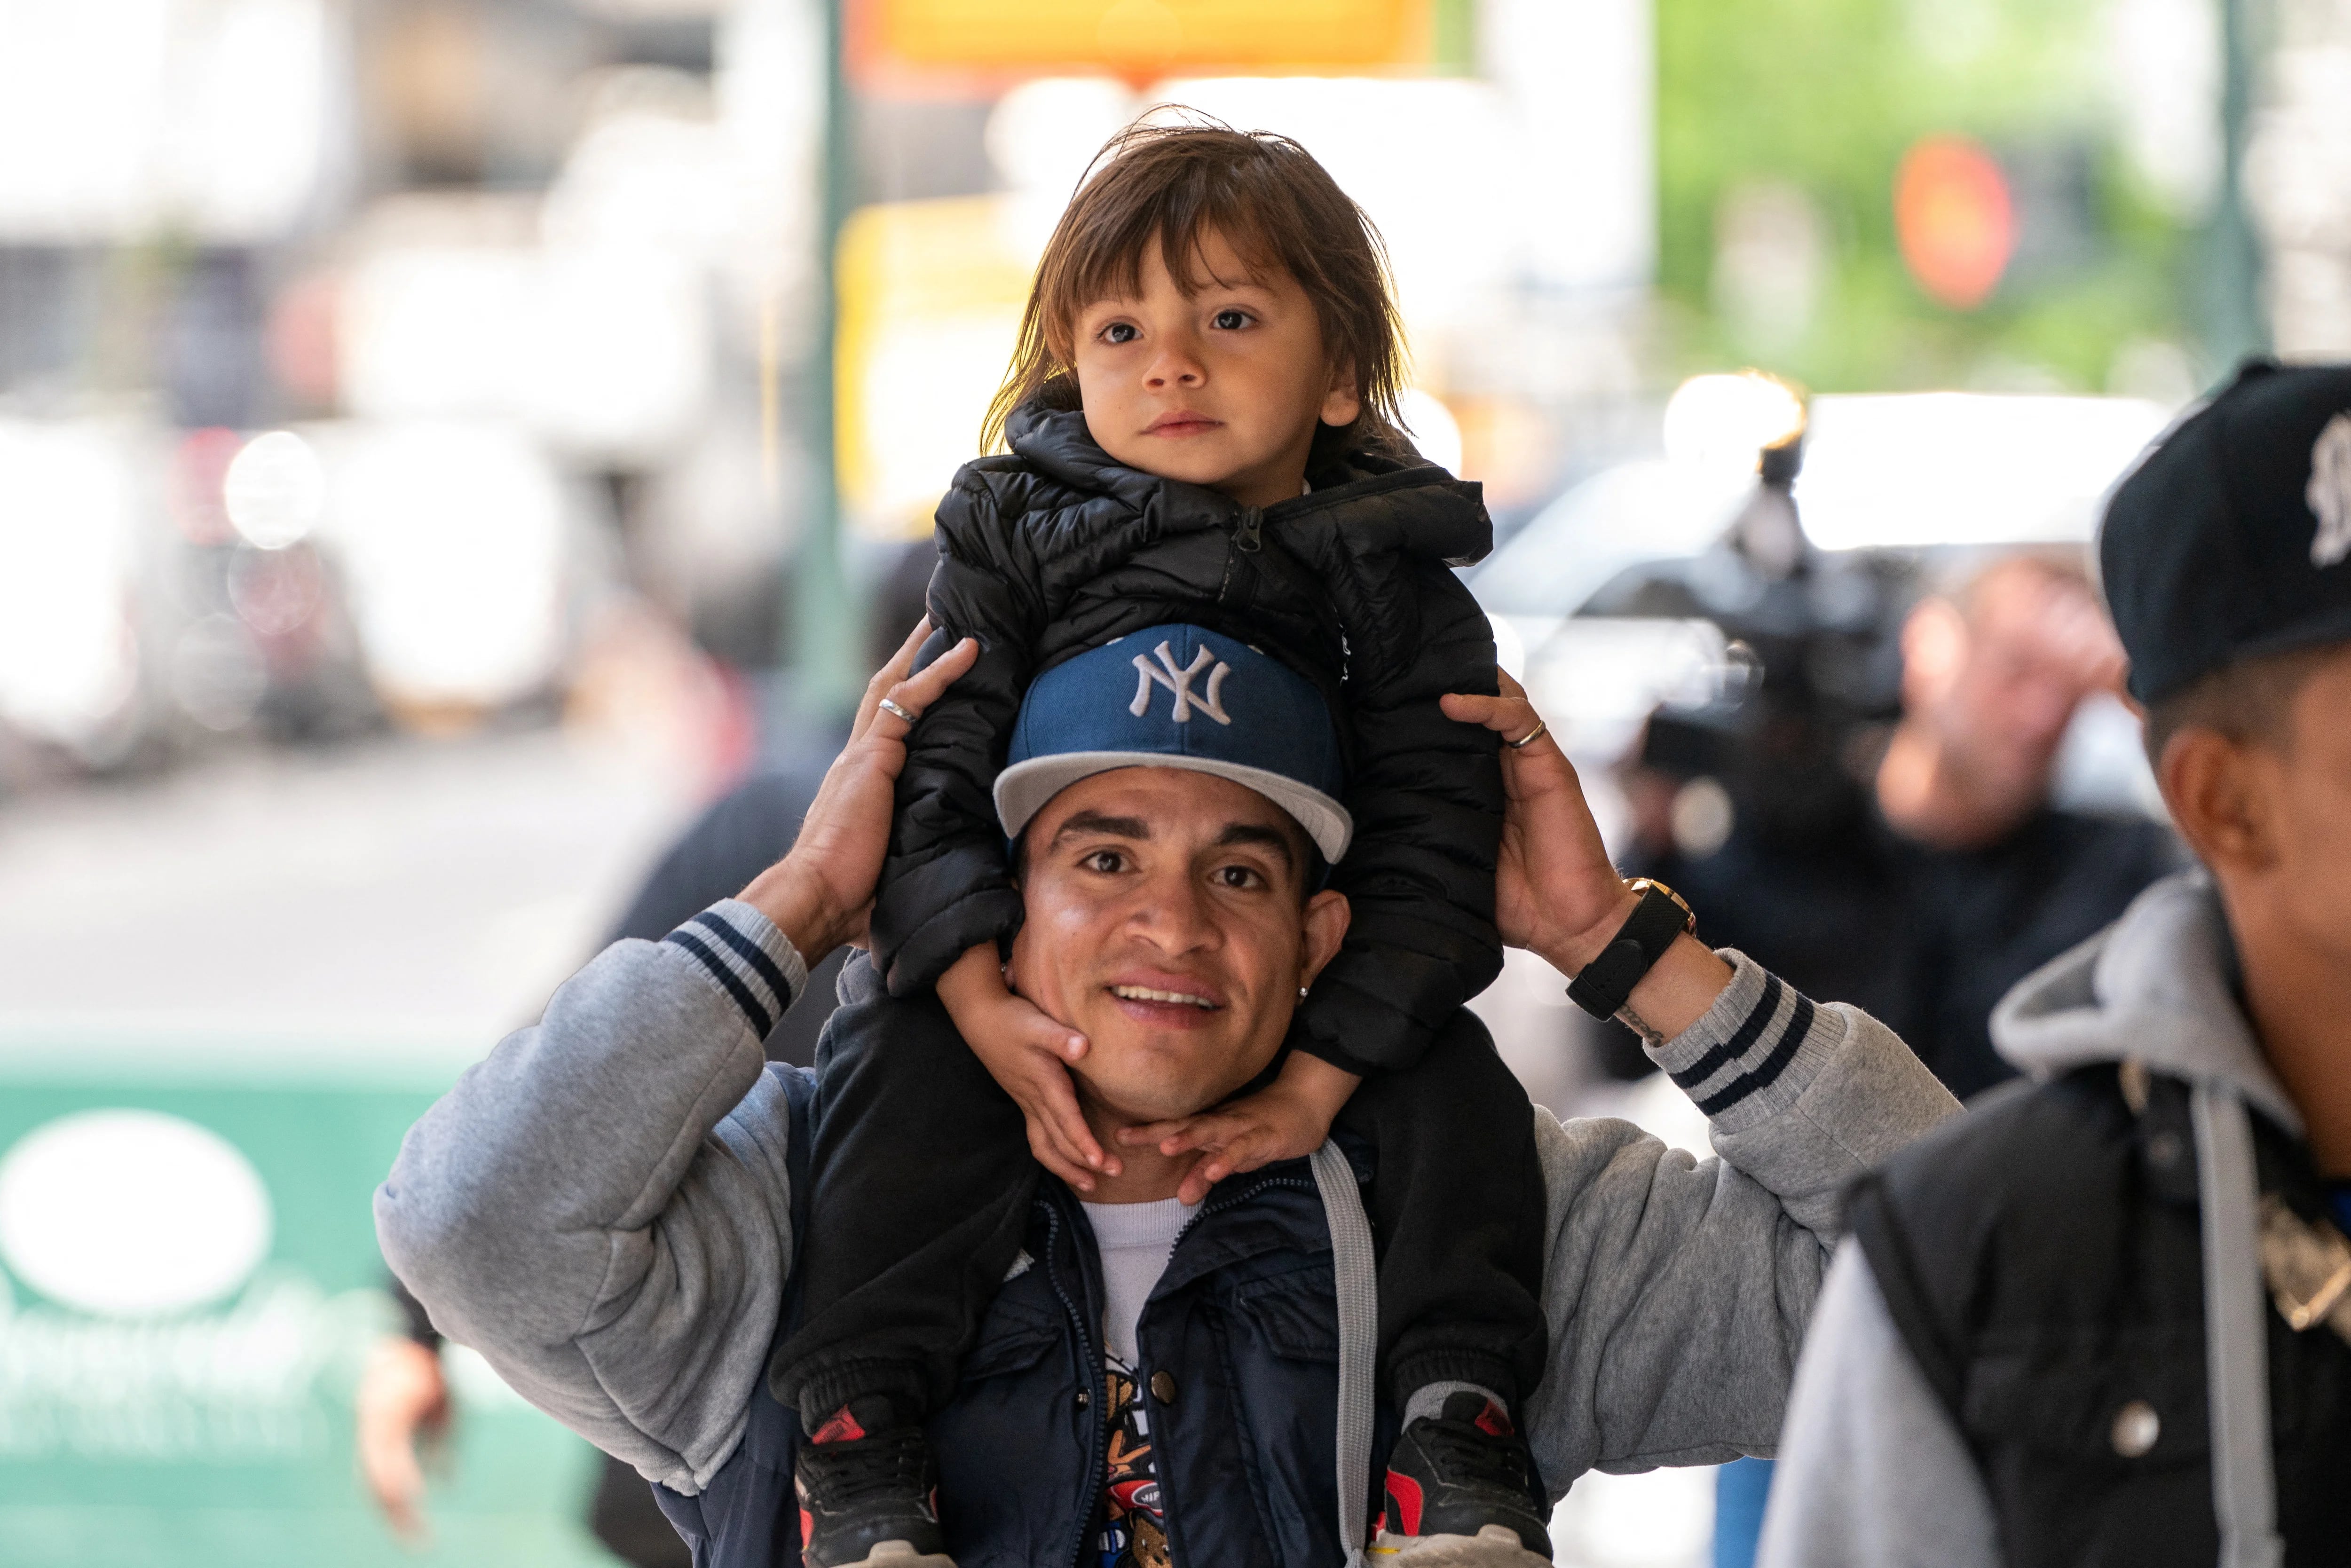 Un migrante junto a una niña en Nueva York (REUTERS/David 'Dee' Delgado)